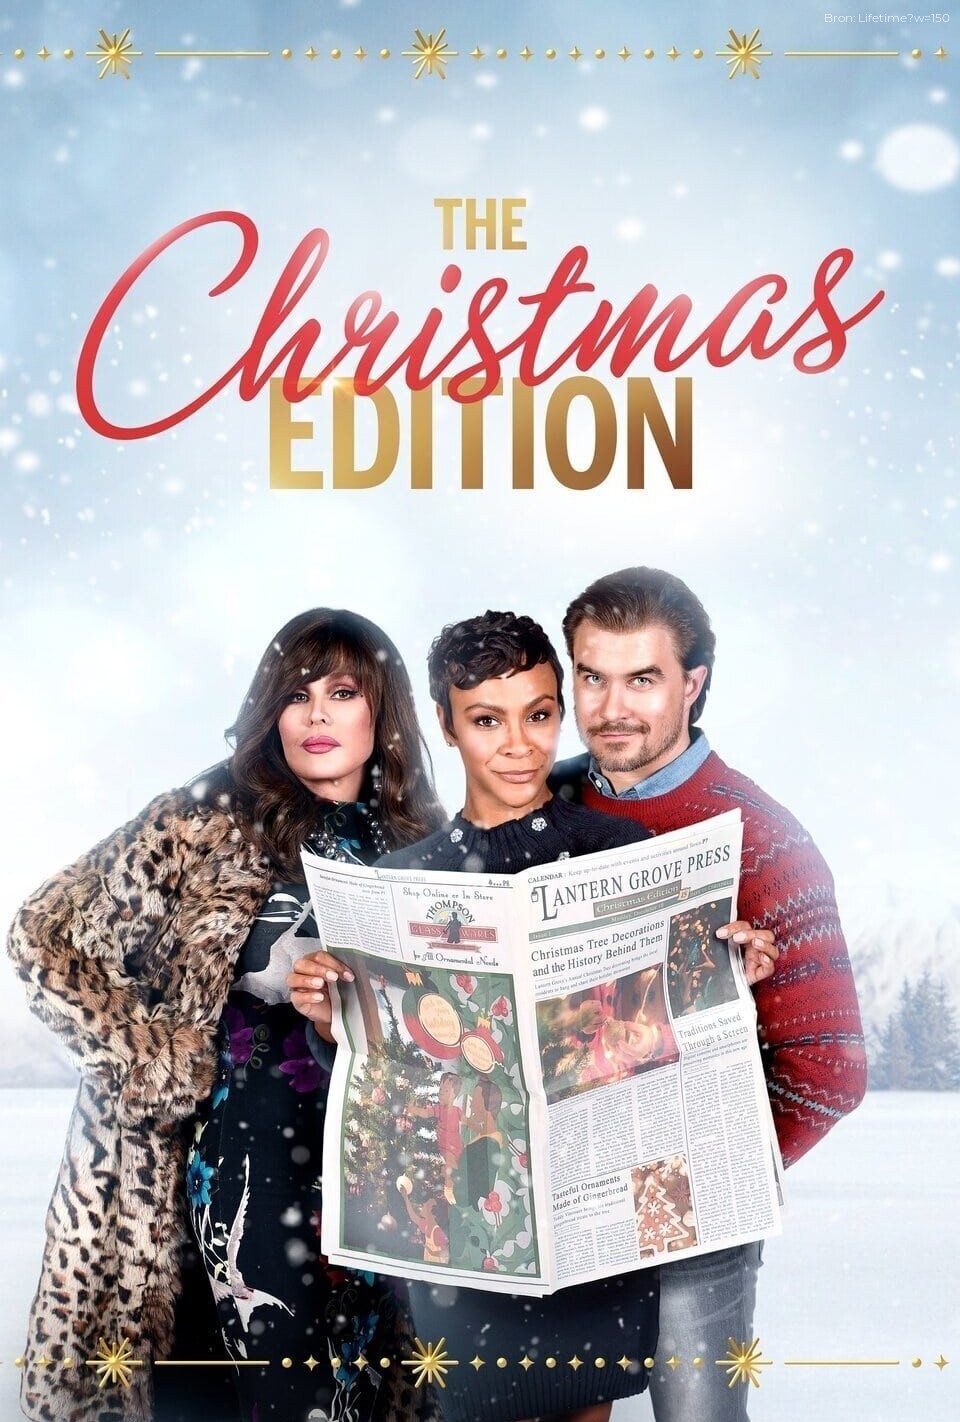 The Christmas Edition